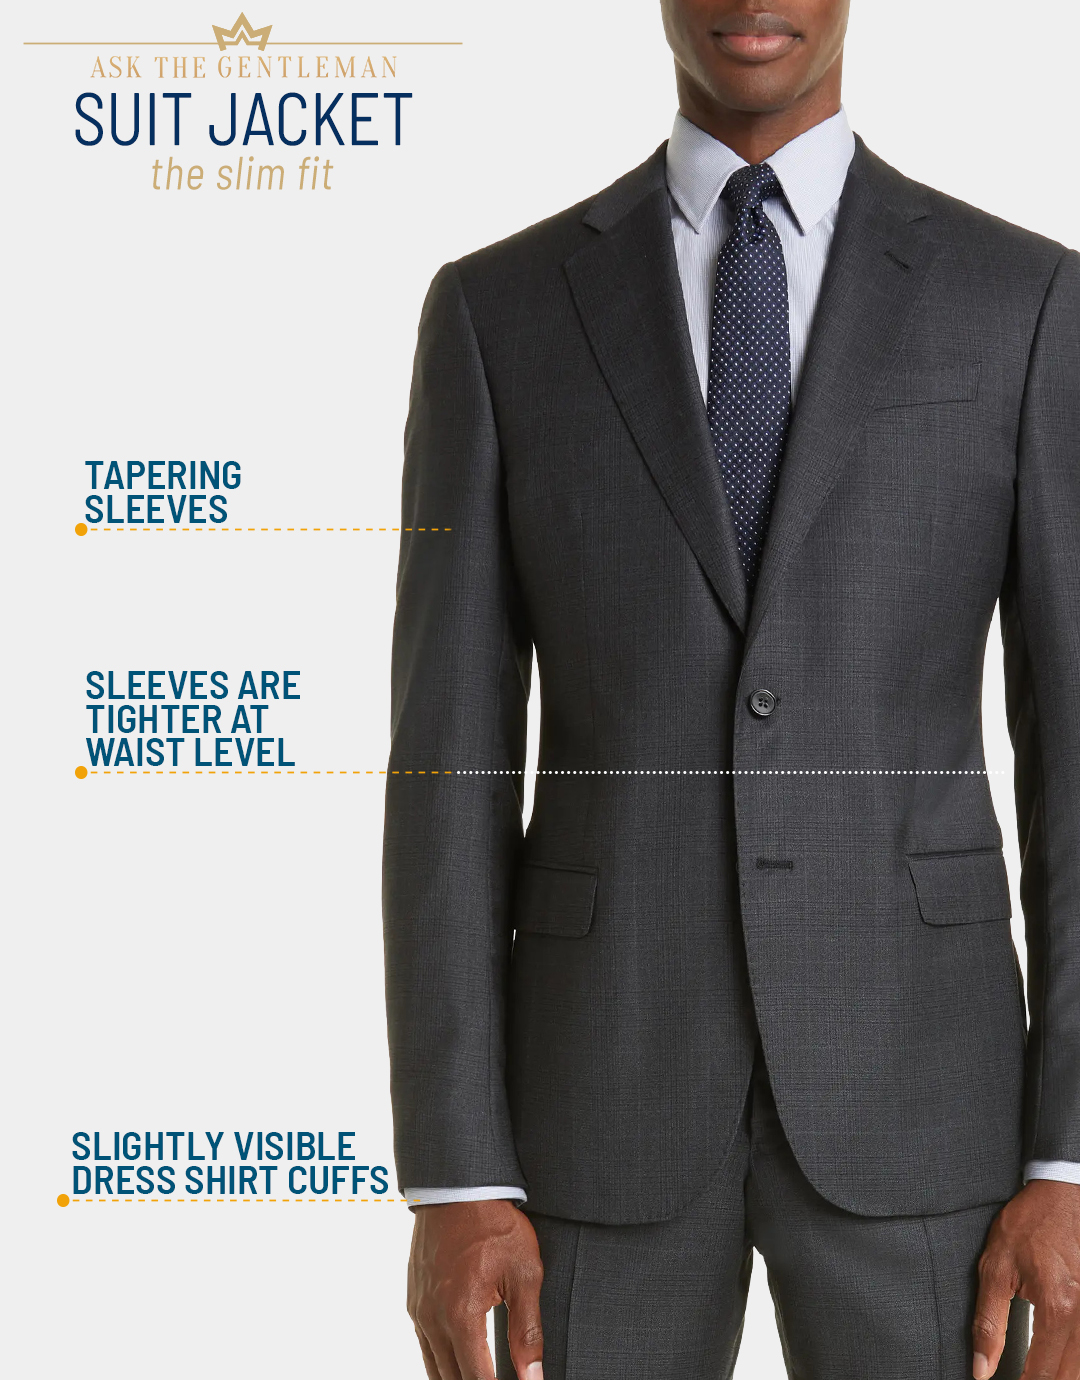 What is a slim-fit suit jacket cut